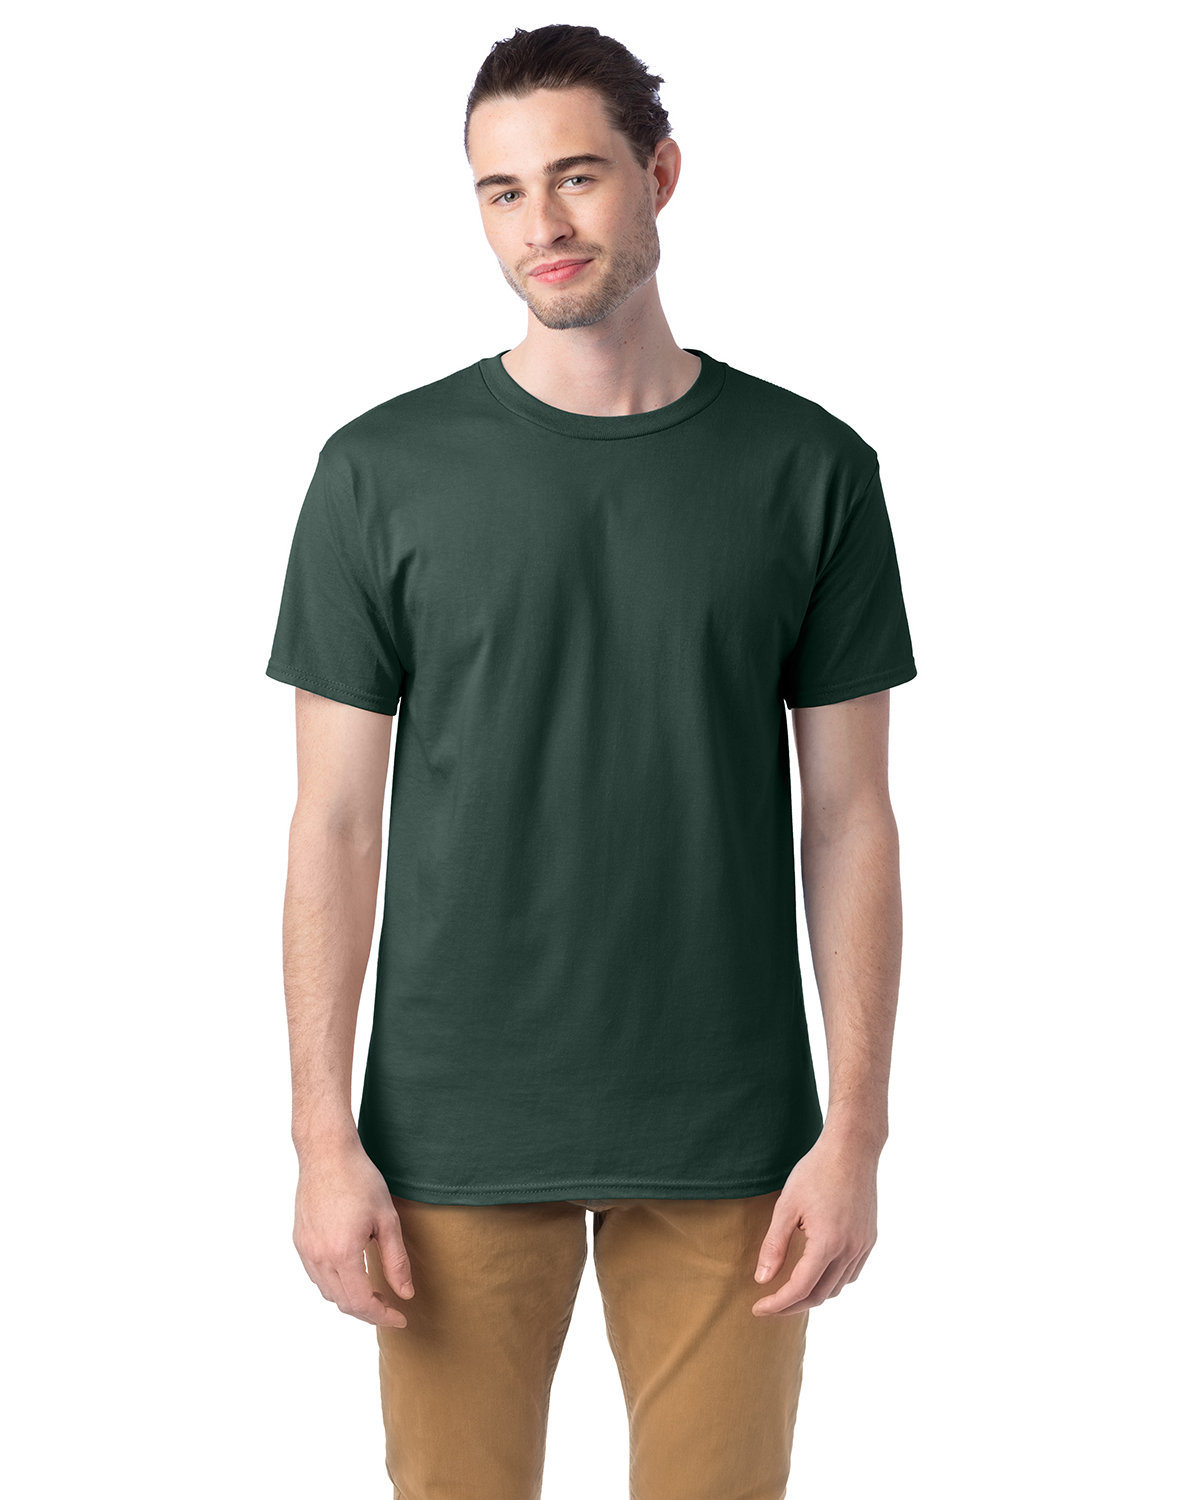 Hanes Unisex 5.2 oz., Comfortsoft® Cotton T-Shirt ATHLETIC DK GREN 